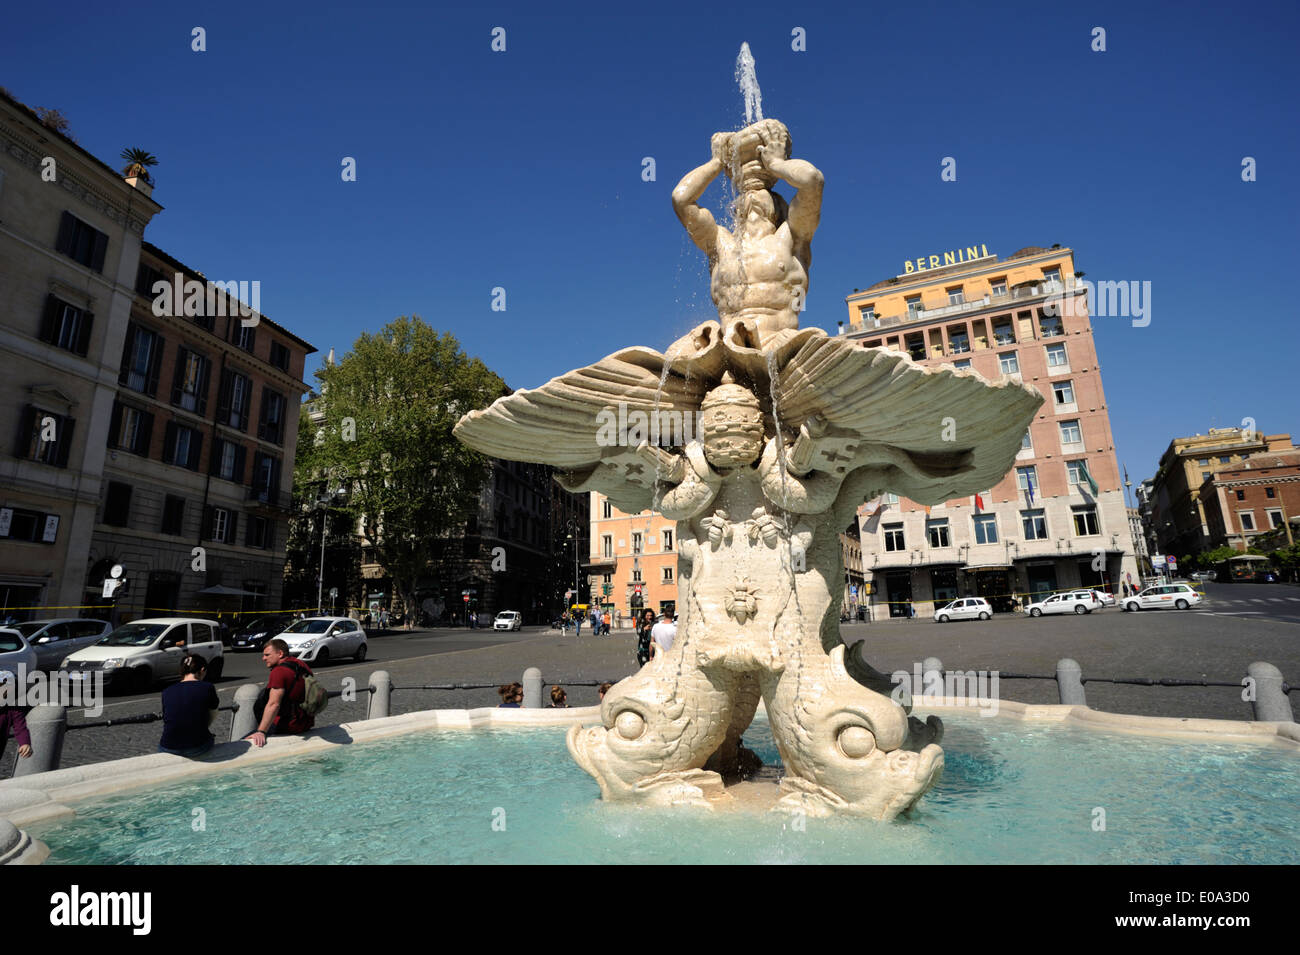 italy, rome, piazza barberini, bernini triton fountain Stock Photo - Alamy